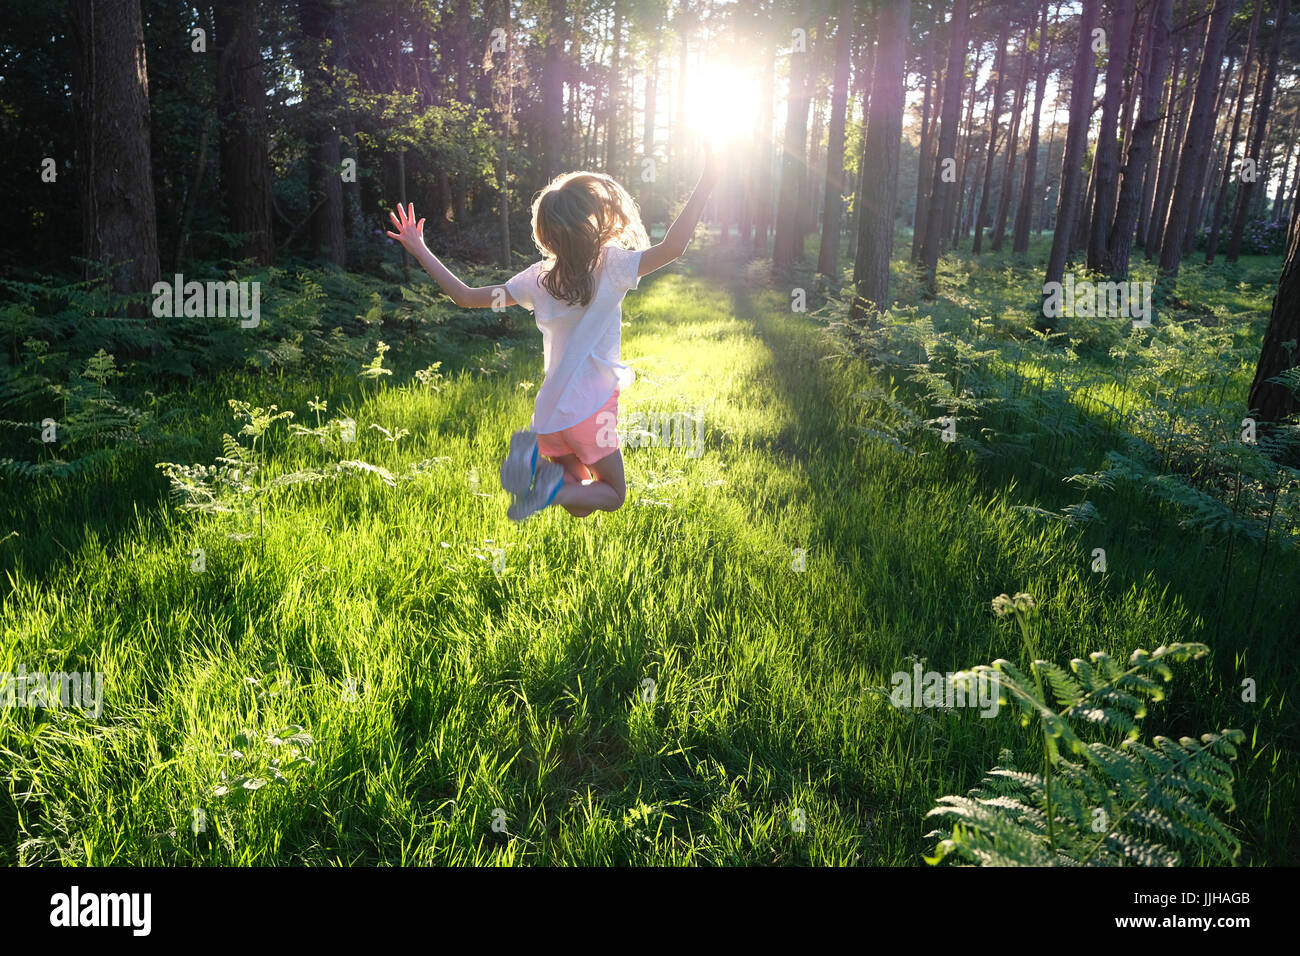 Una niña salta de alegría en un bosque iluminado. Foto de stock